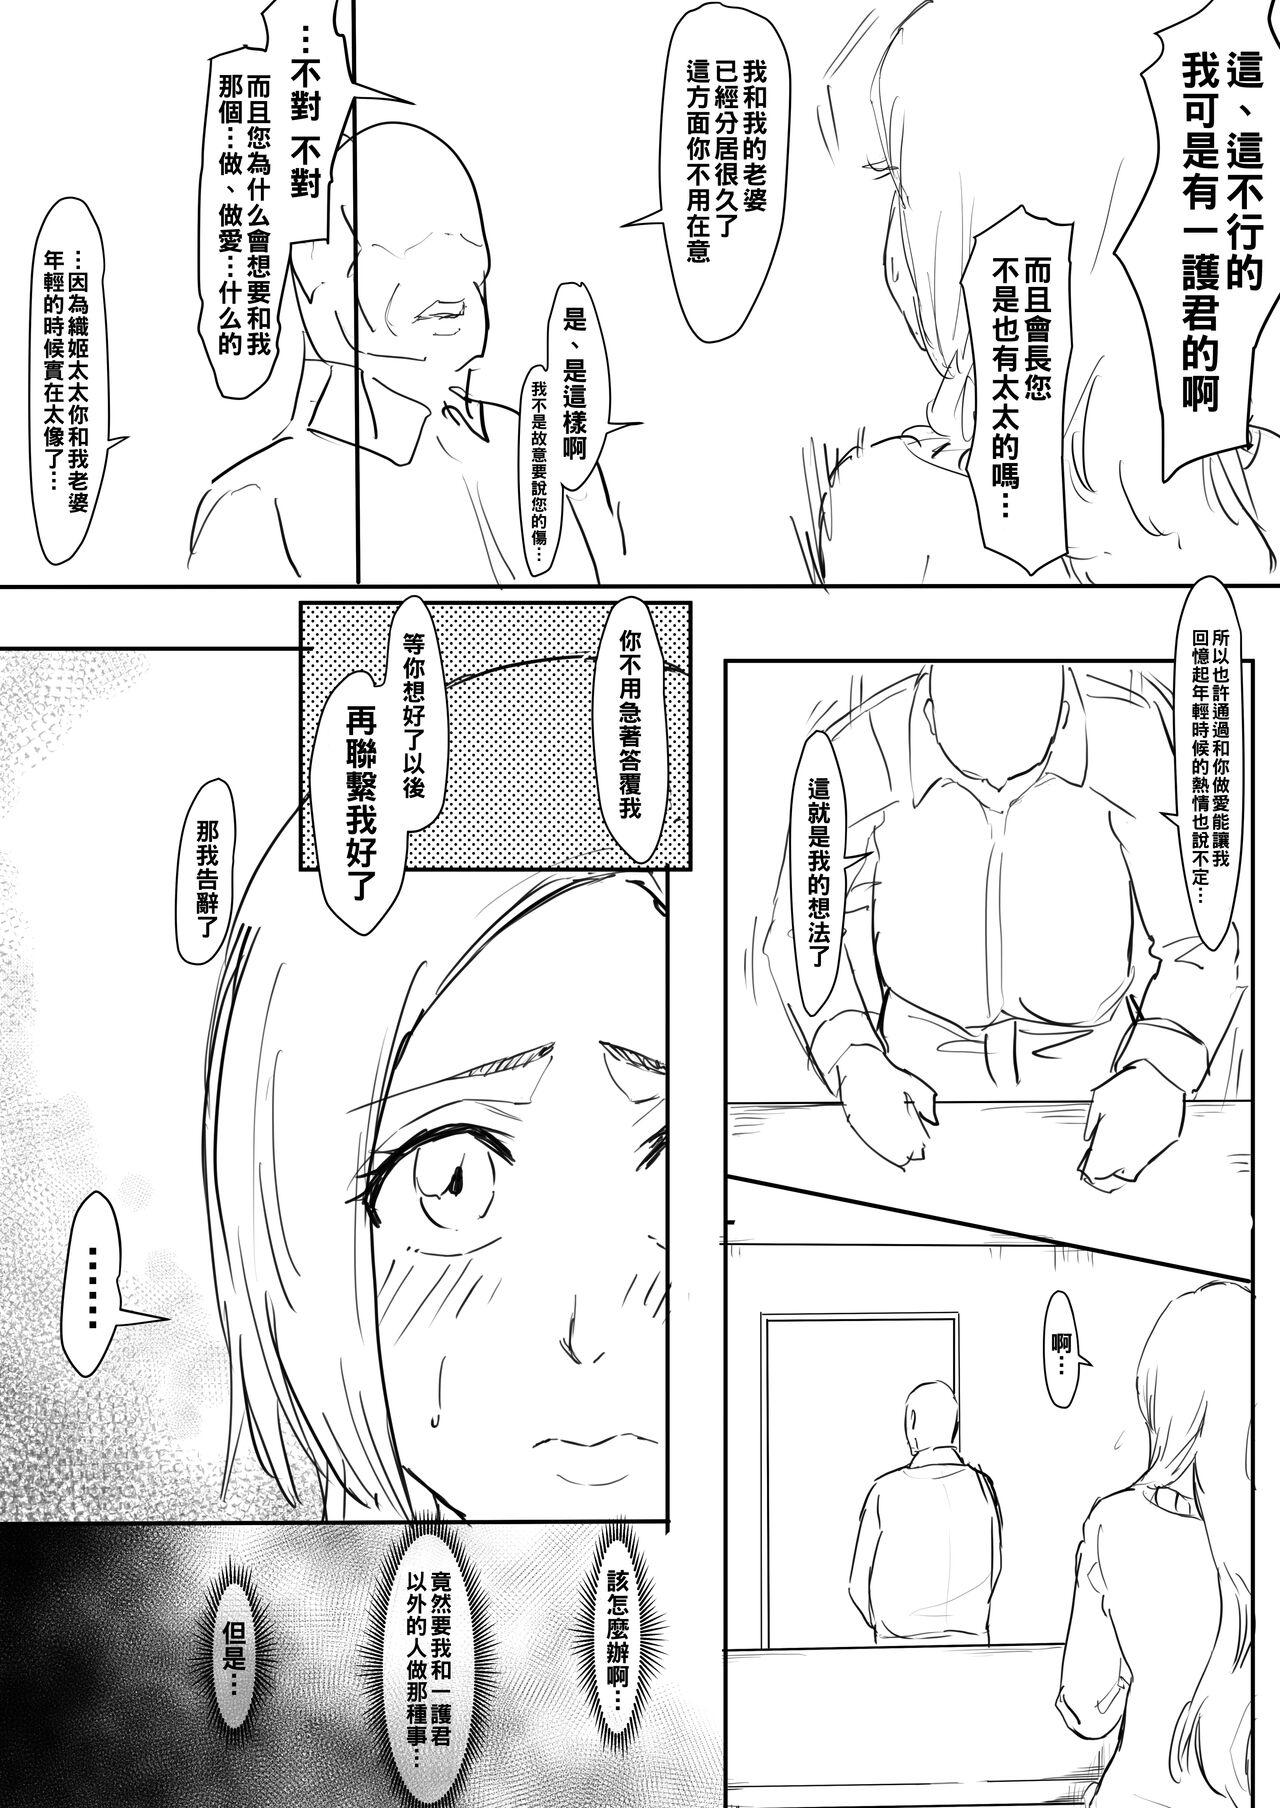 Delicia Orihime Manga - Bleach Fodendo - Page 4